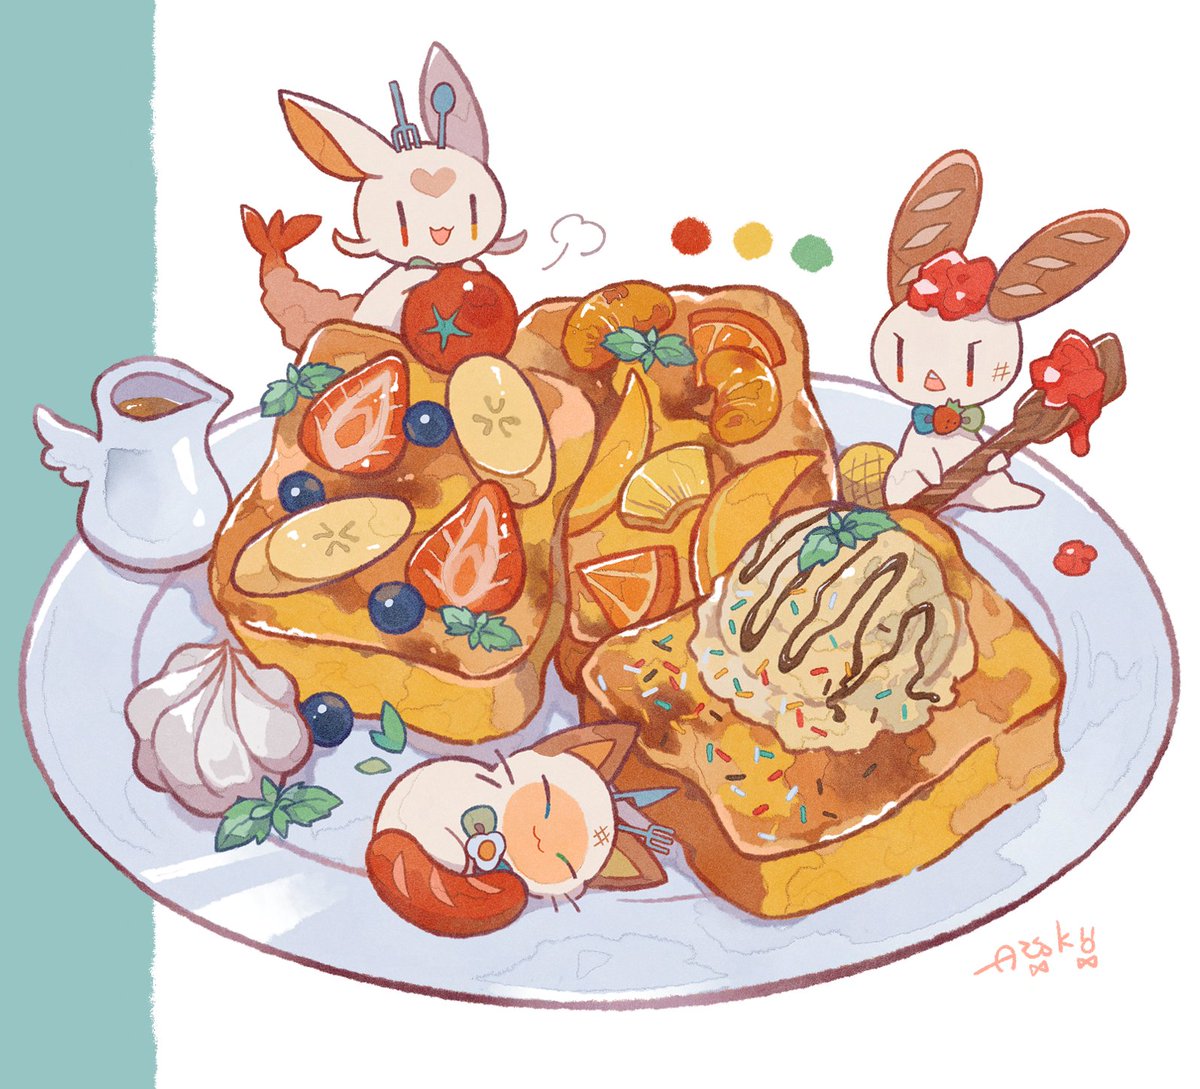 「フレンチトースト #朝ごはんの魔物 」|あう子🍍原稿のイラスト